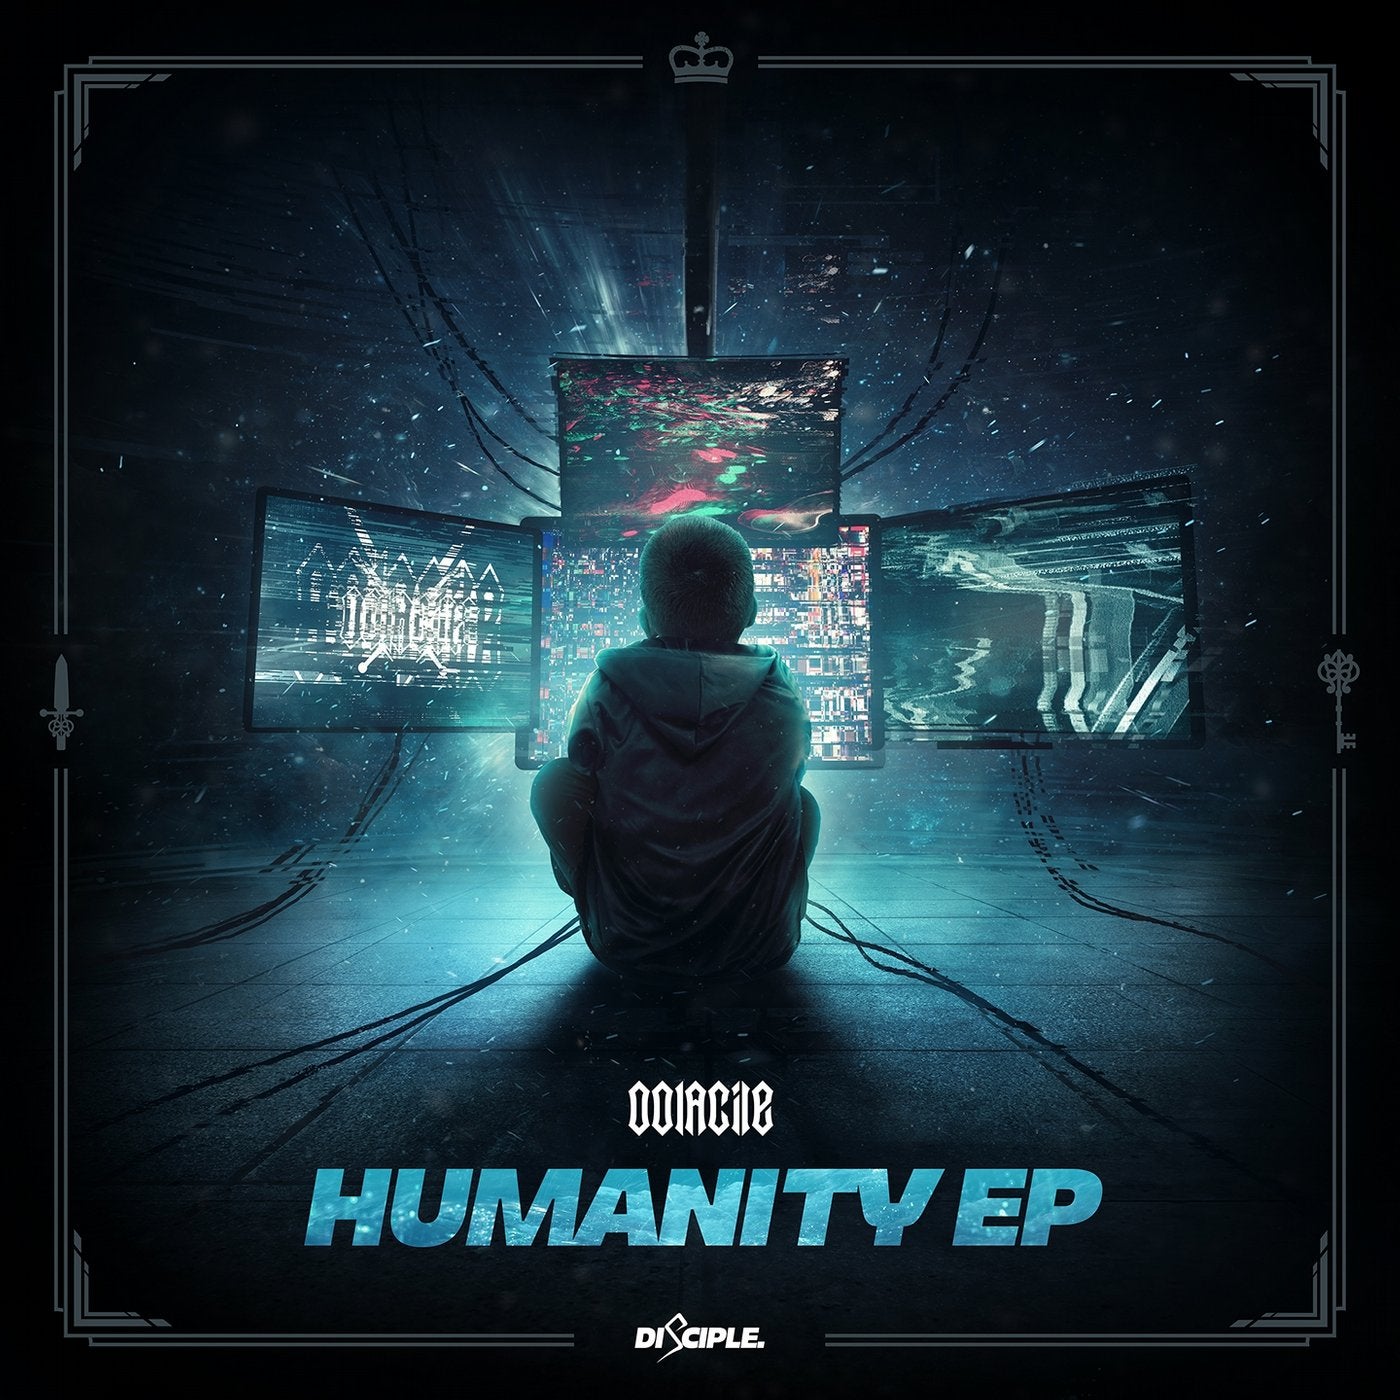 Humanity EP